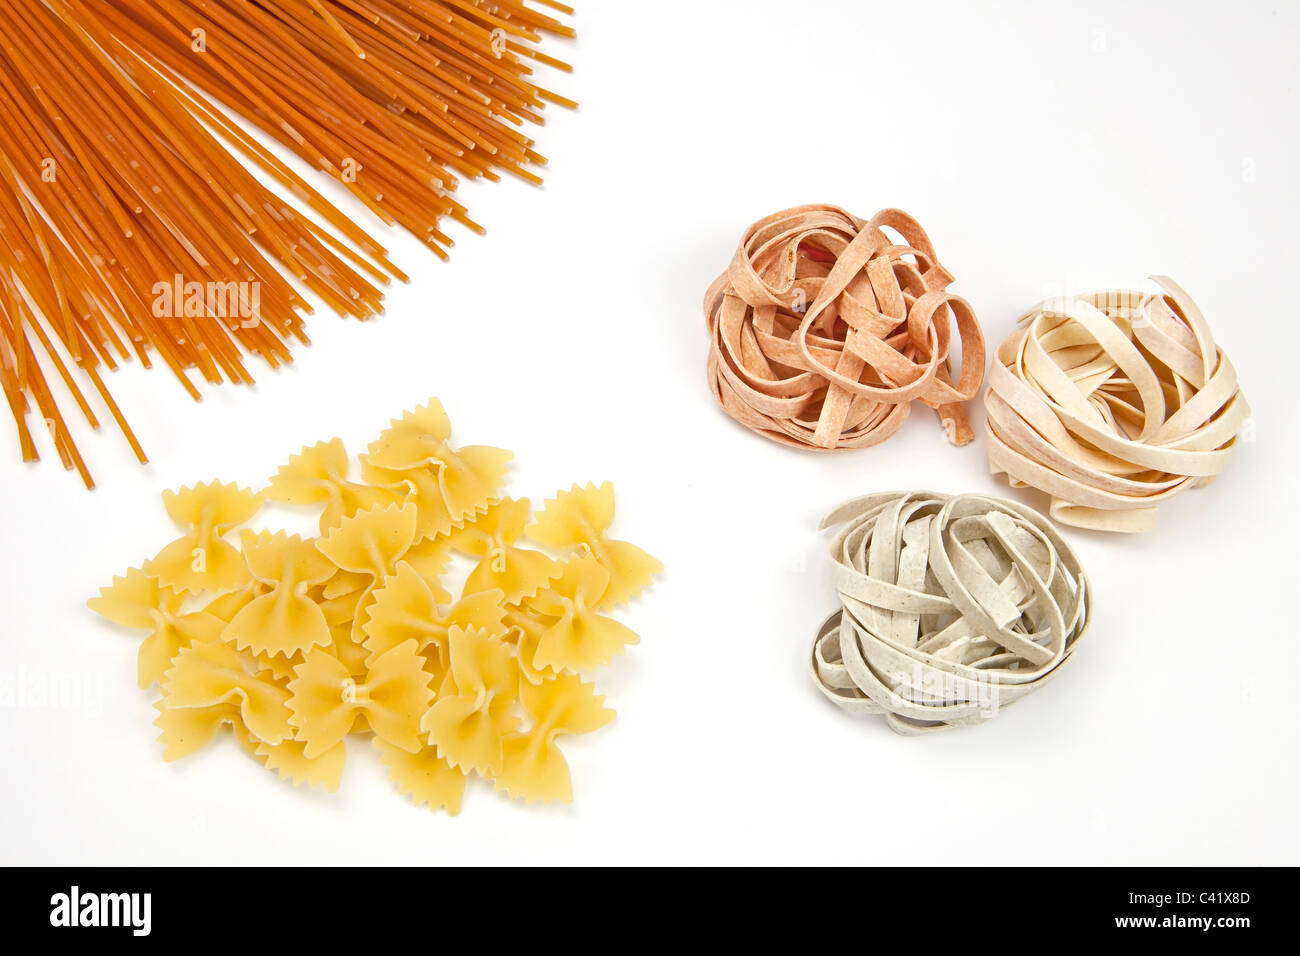 Tre diversi tipi di pasta - spaghetti, farfalle, le tagliatelle Foto Stock